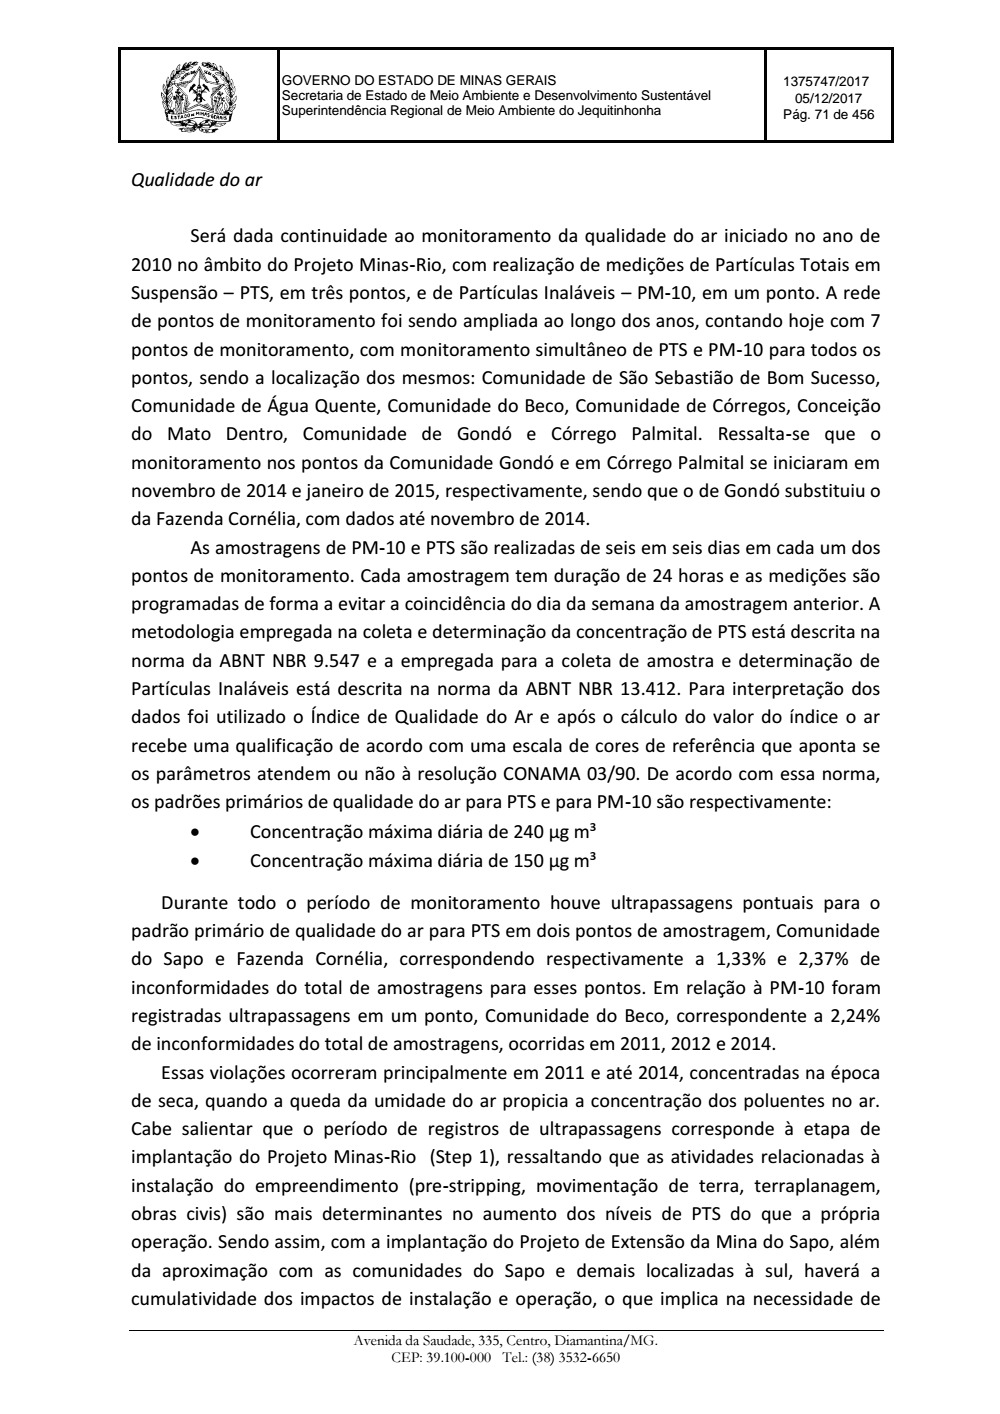 Page 71 from Parecer único da Secretaria de estado de Meio Ambiente e Desenvolvimento Sustentável (SEMAD)